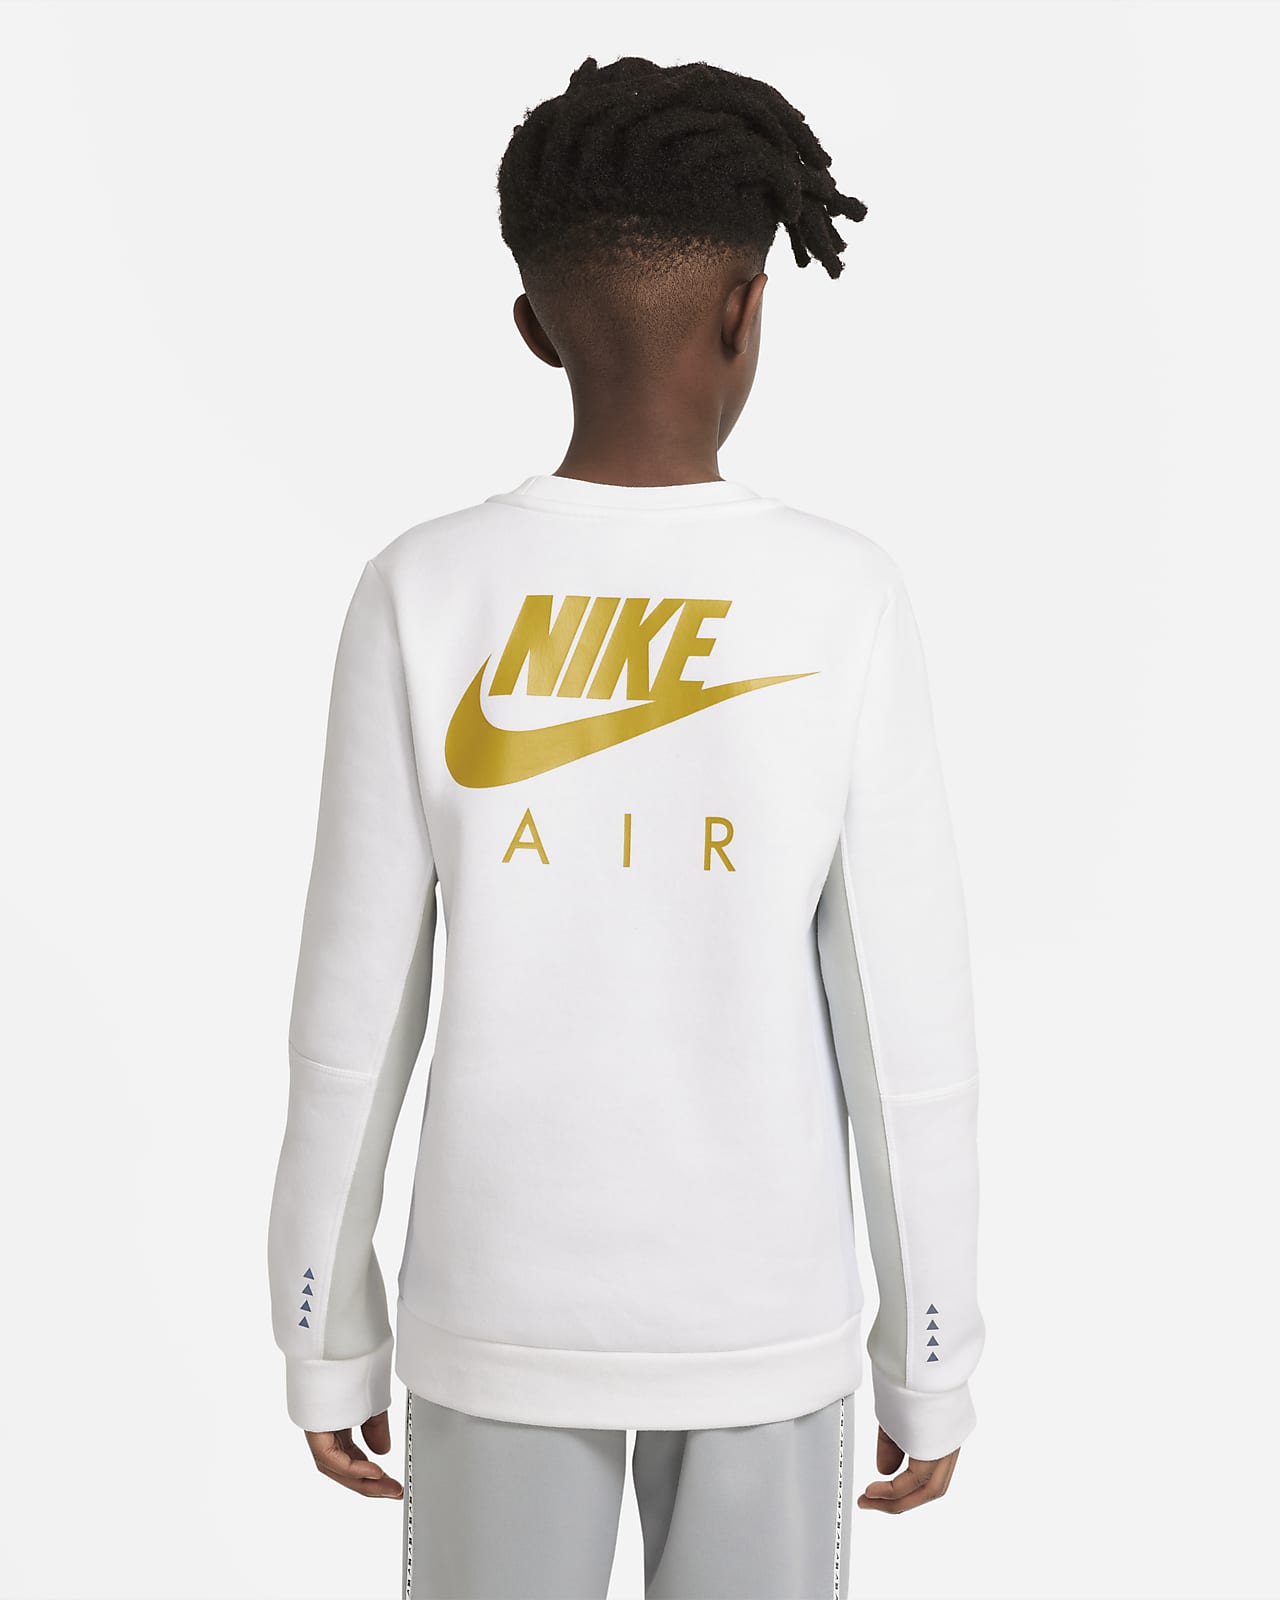 Sweat-shirt Nike Air garçon plus âgé.